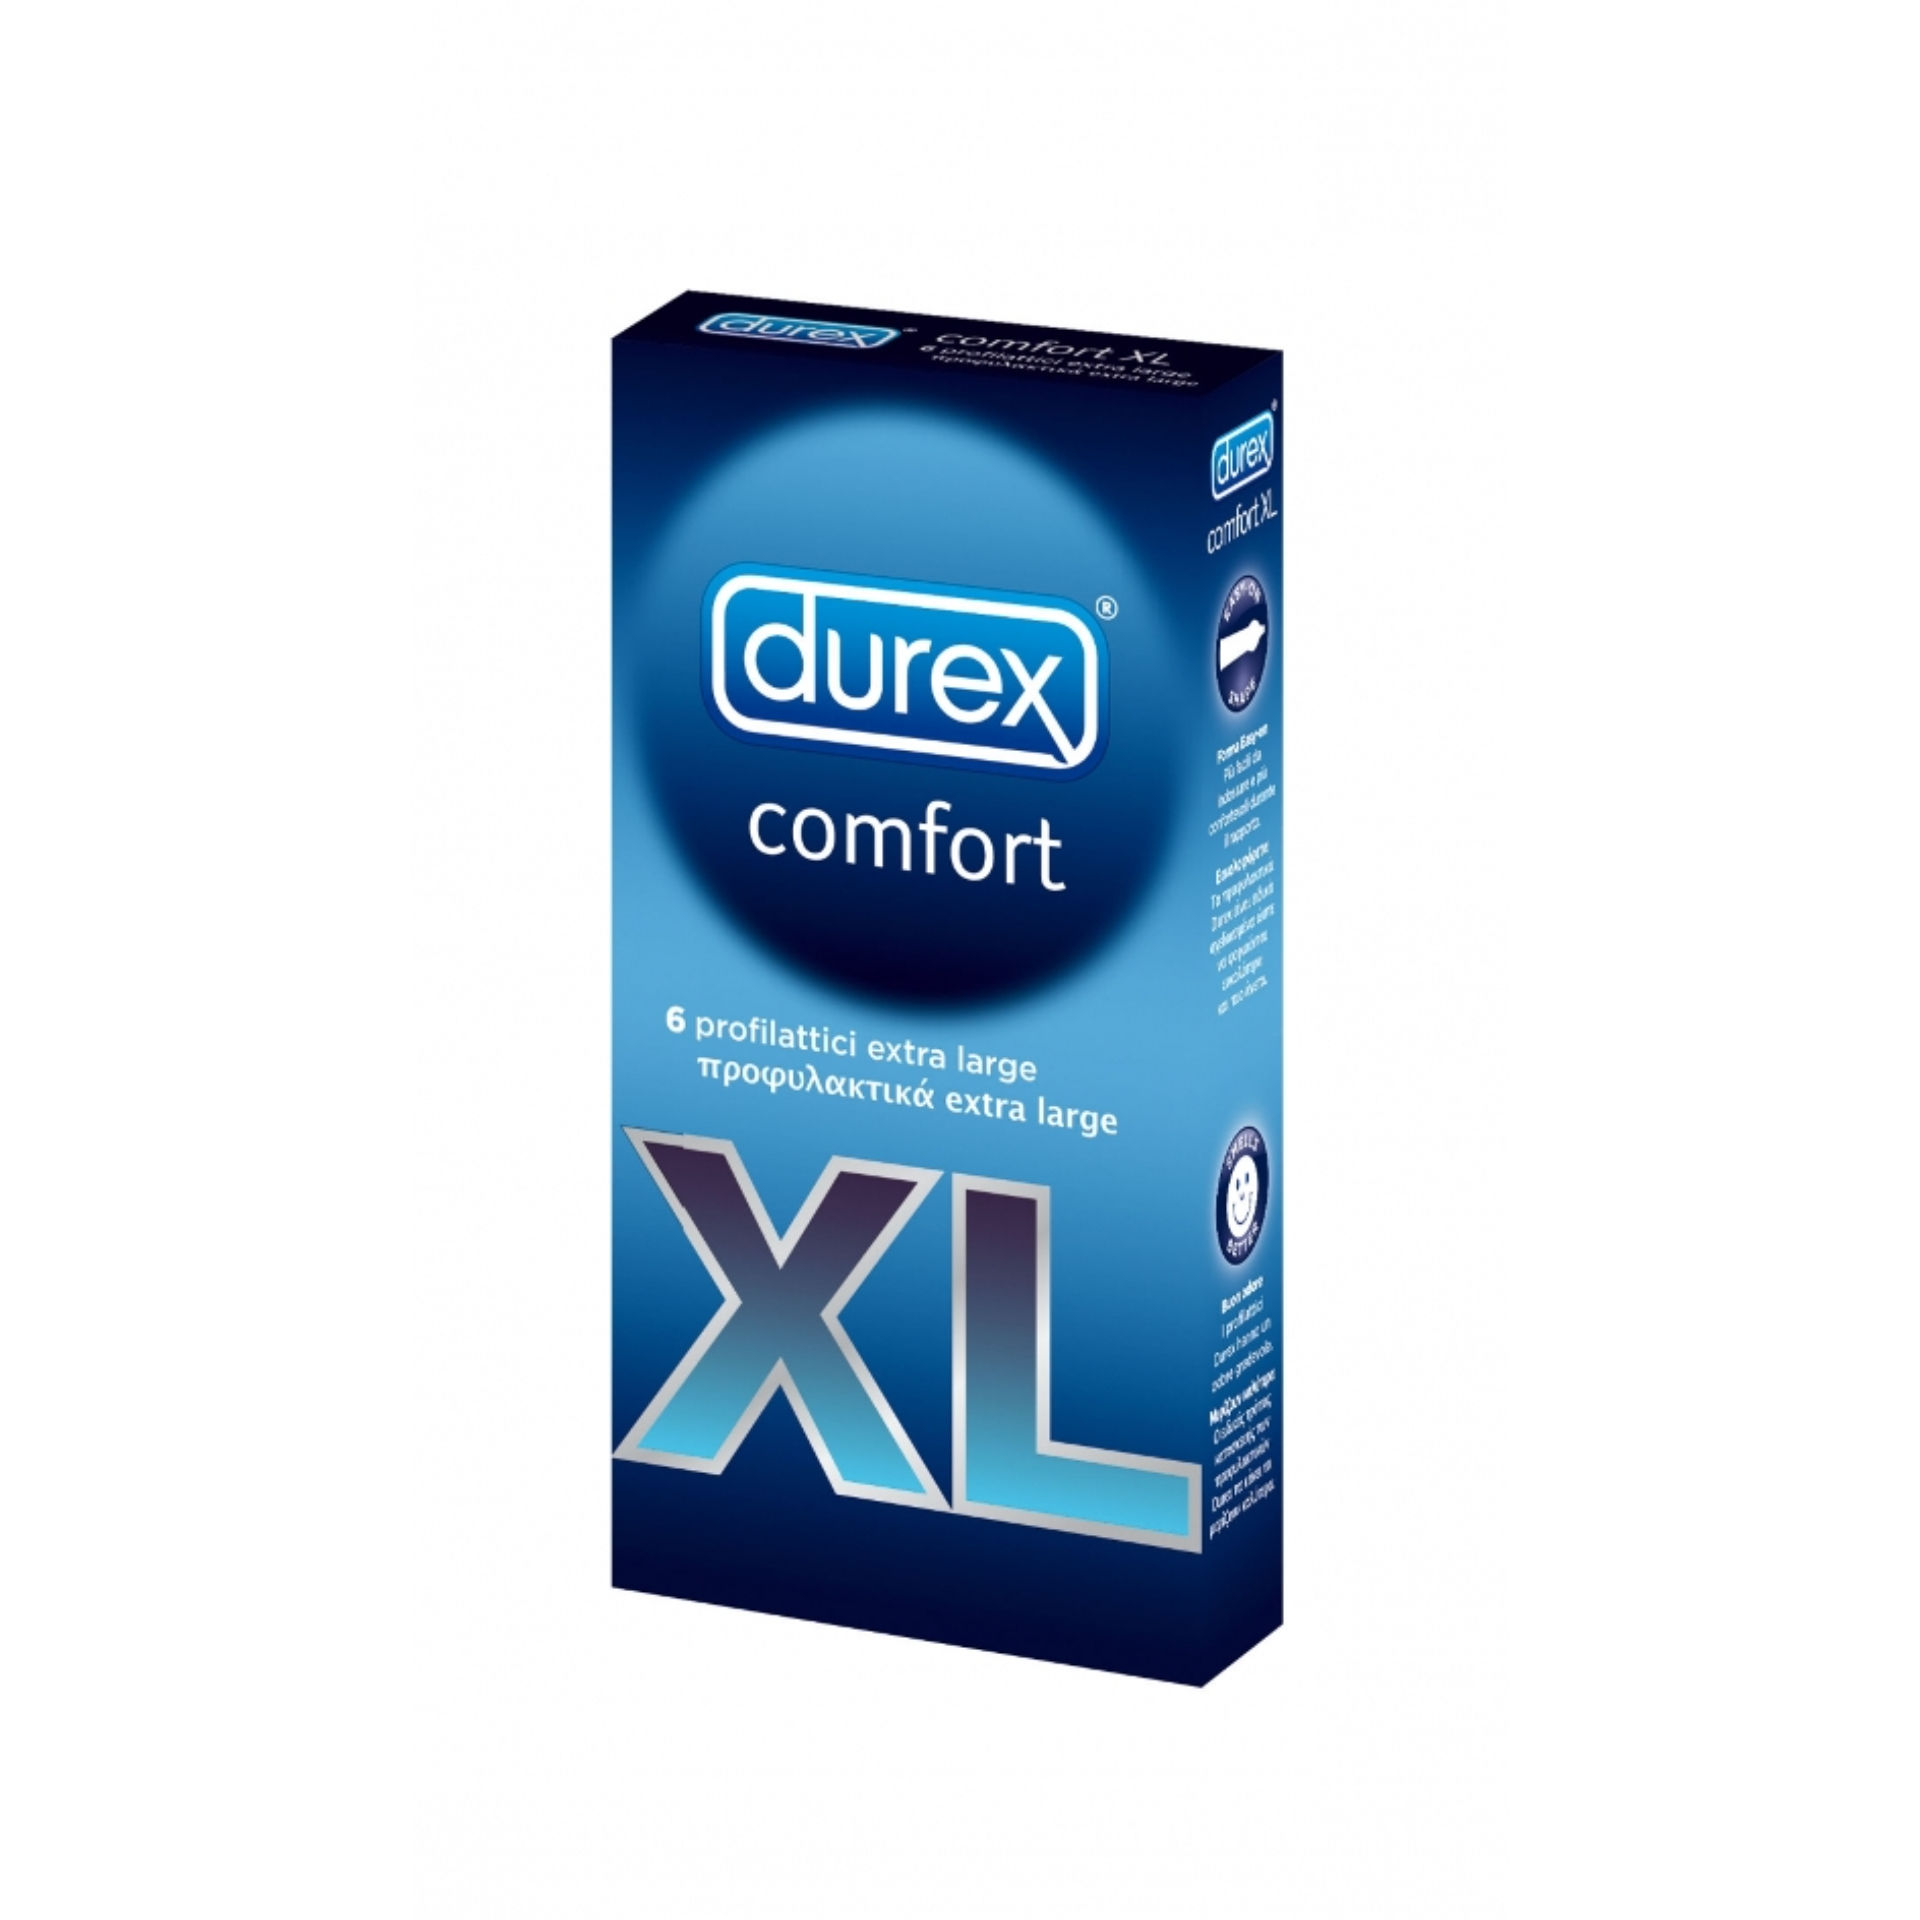 DUREX COMFORT XL 6PZDurex